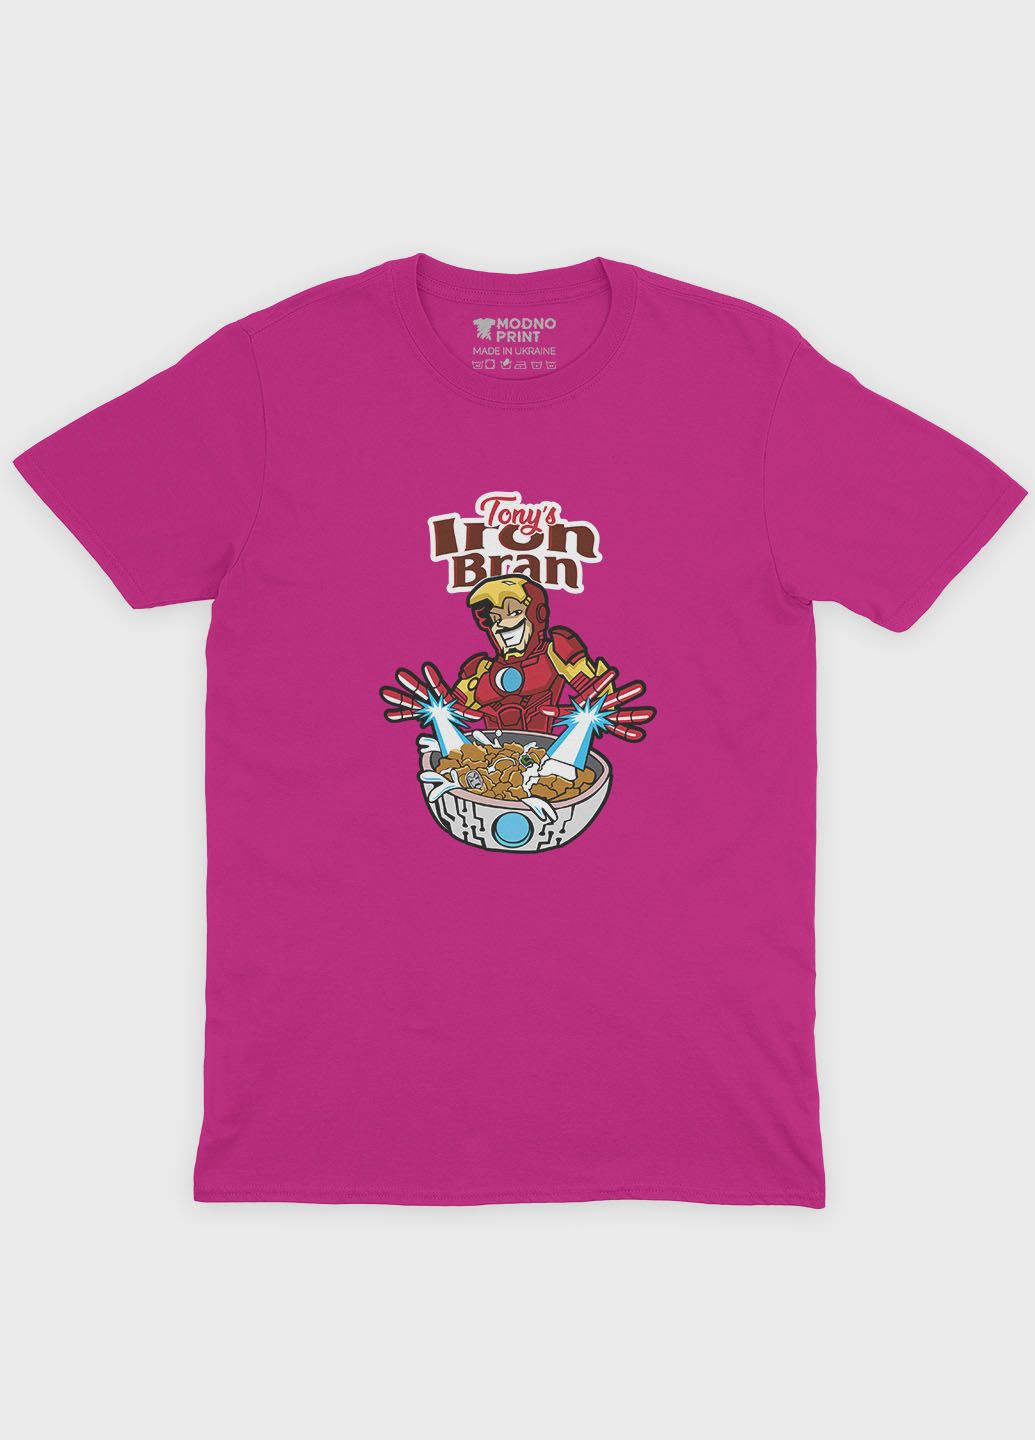 Рожева демісезонна футболка для дівчинки з принтом супергероя - залізна людина (ts001-1-fuxj-006-016-013-g) Modno